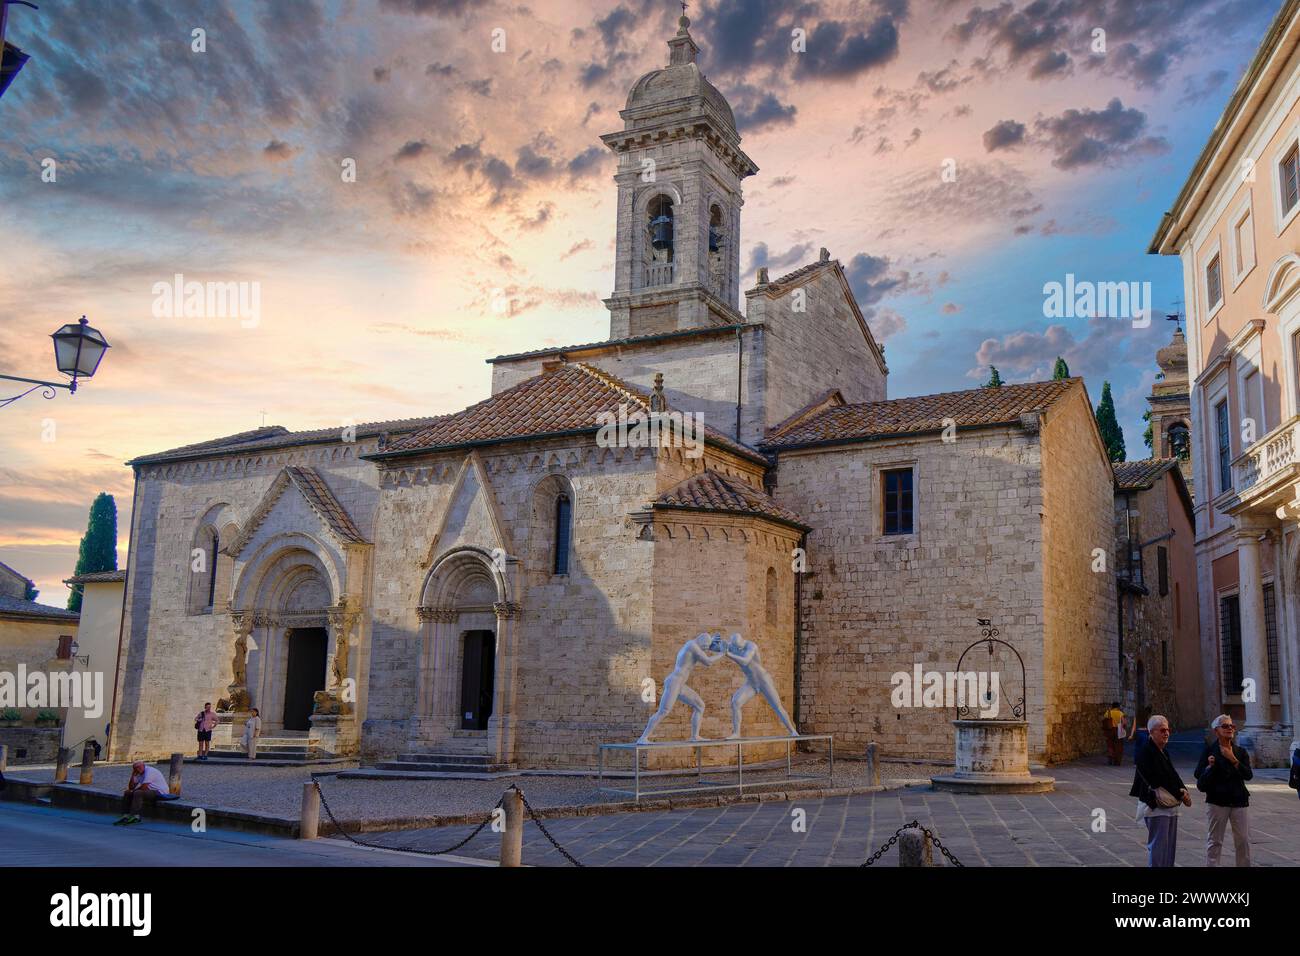 Collegiate Church, Pieve dei Santi Quirico e Giulitta, Pieve di Orsenna, Palazzo Chigi, San Quirico d' Orcia, Val d' Orcia, Italy Stock Photo